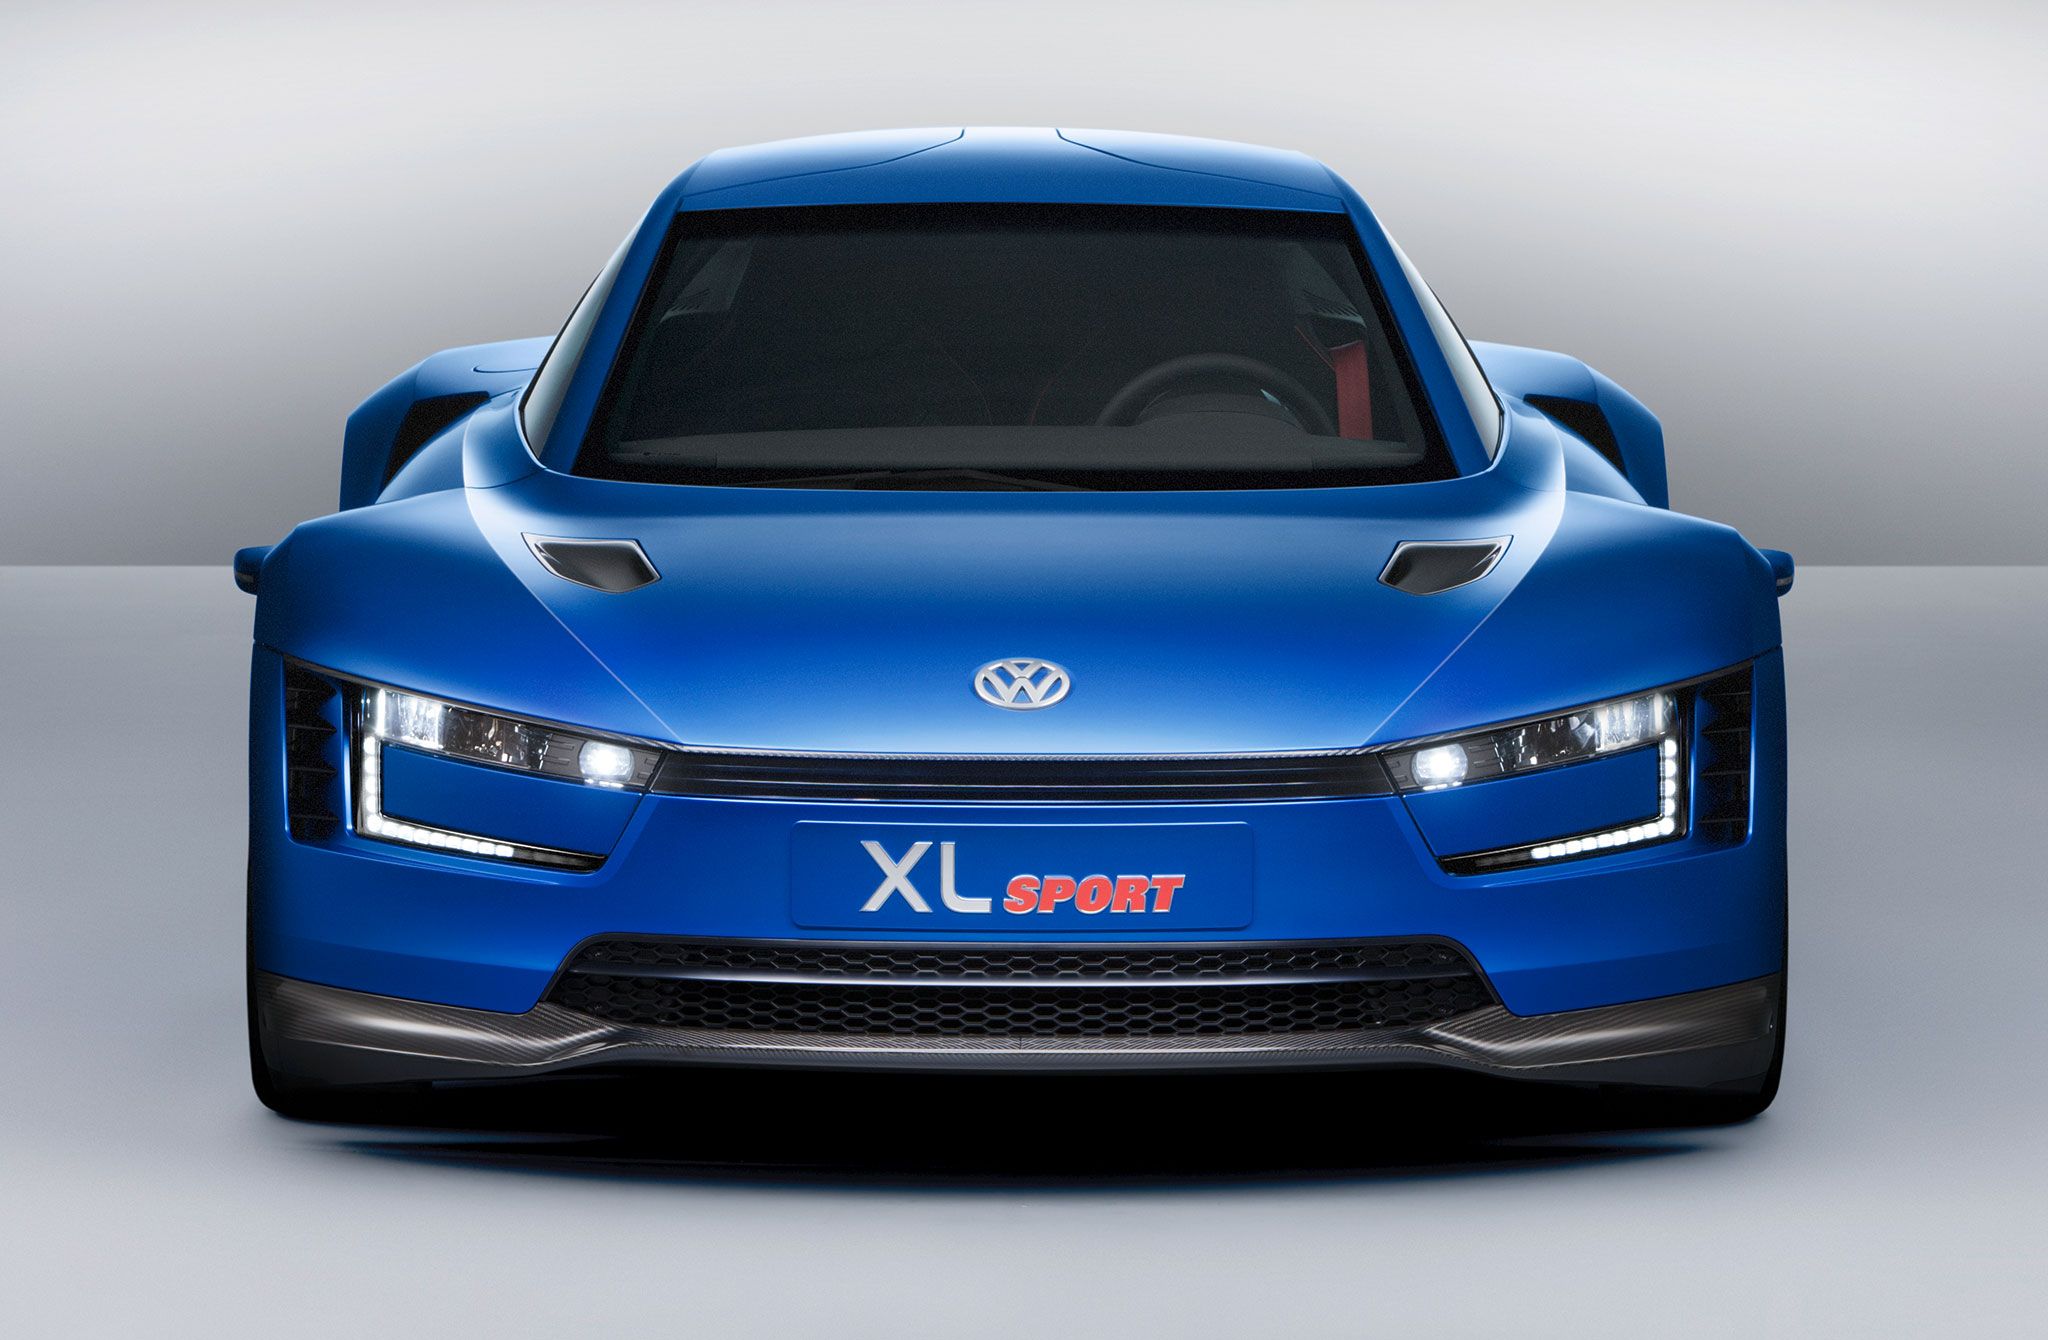 Amazing Volkswagen XL Sport Pictures & Backgrounds